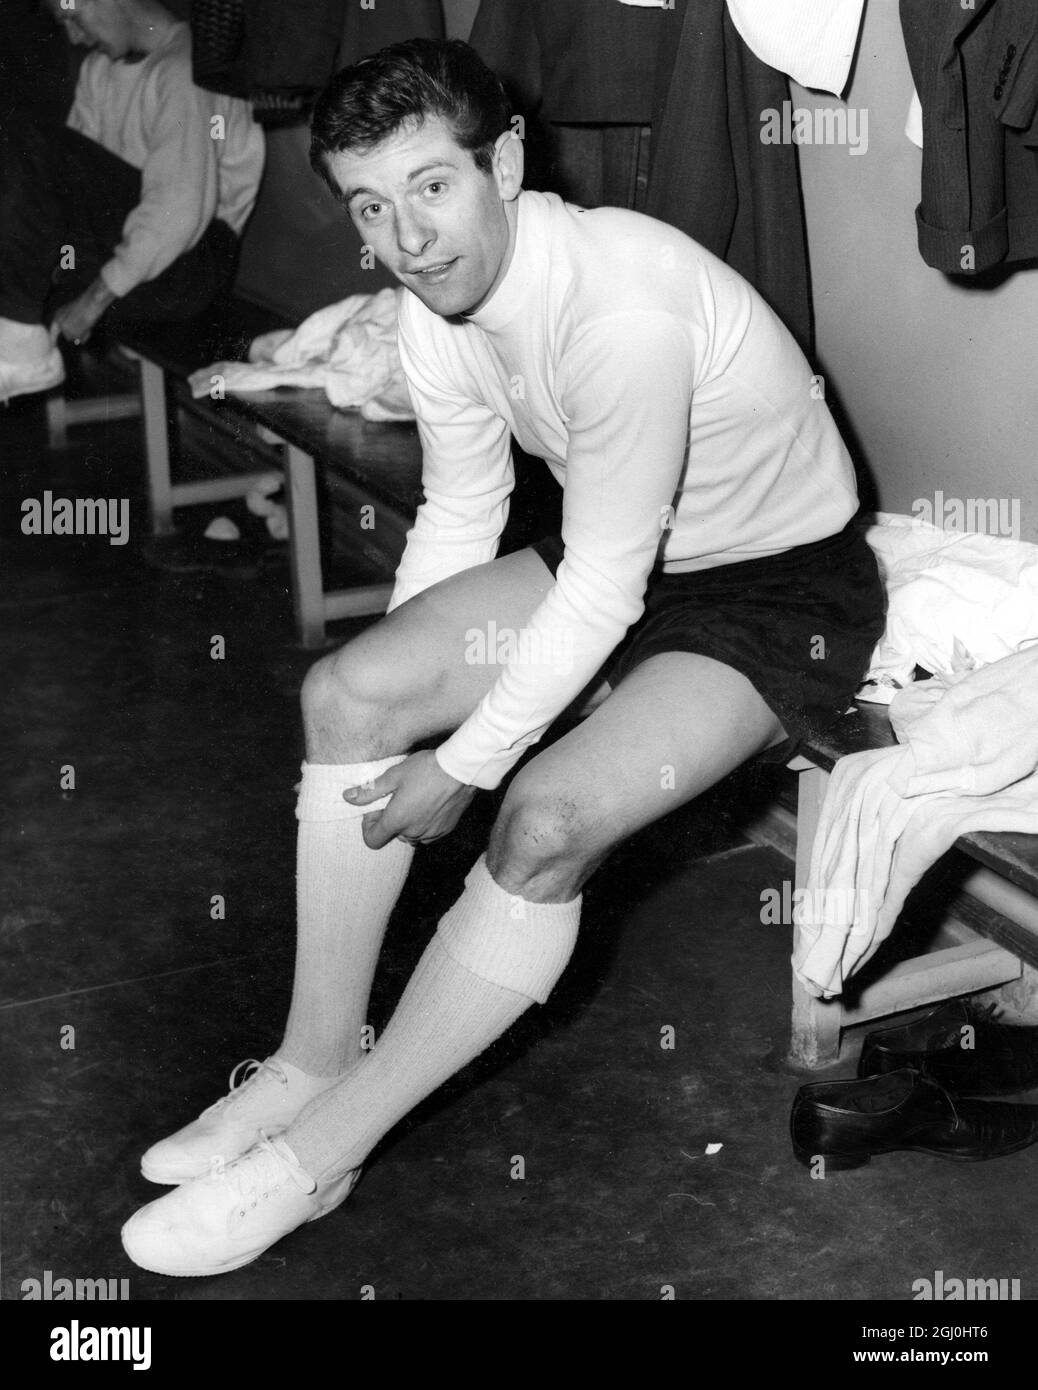 Alan Mullery, der neu unterzeichnete Fulham-Spieler, macht sich bereit für ein Squash-Spiel in Wanstead mit seinen neuen Teamkollegen. März 1964 Stockfoto